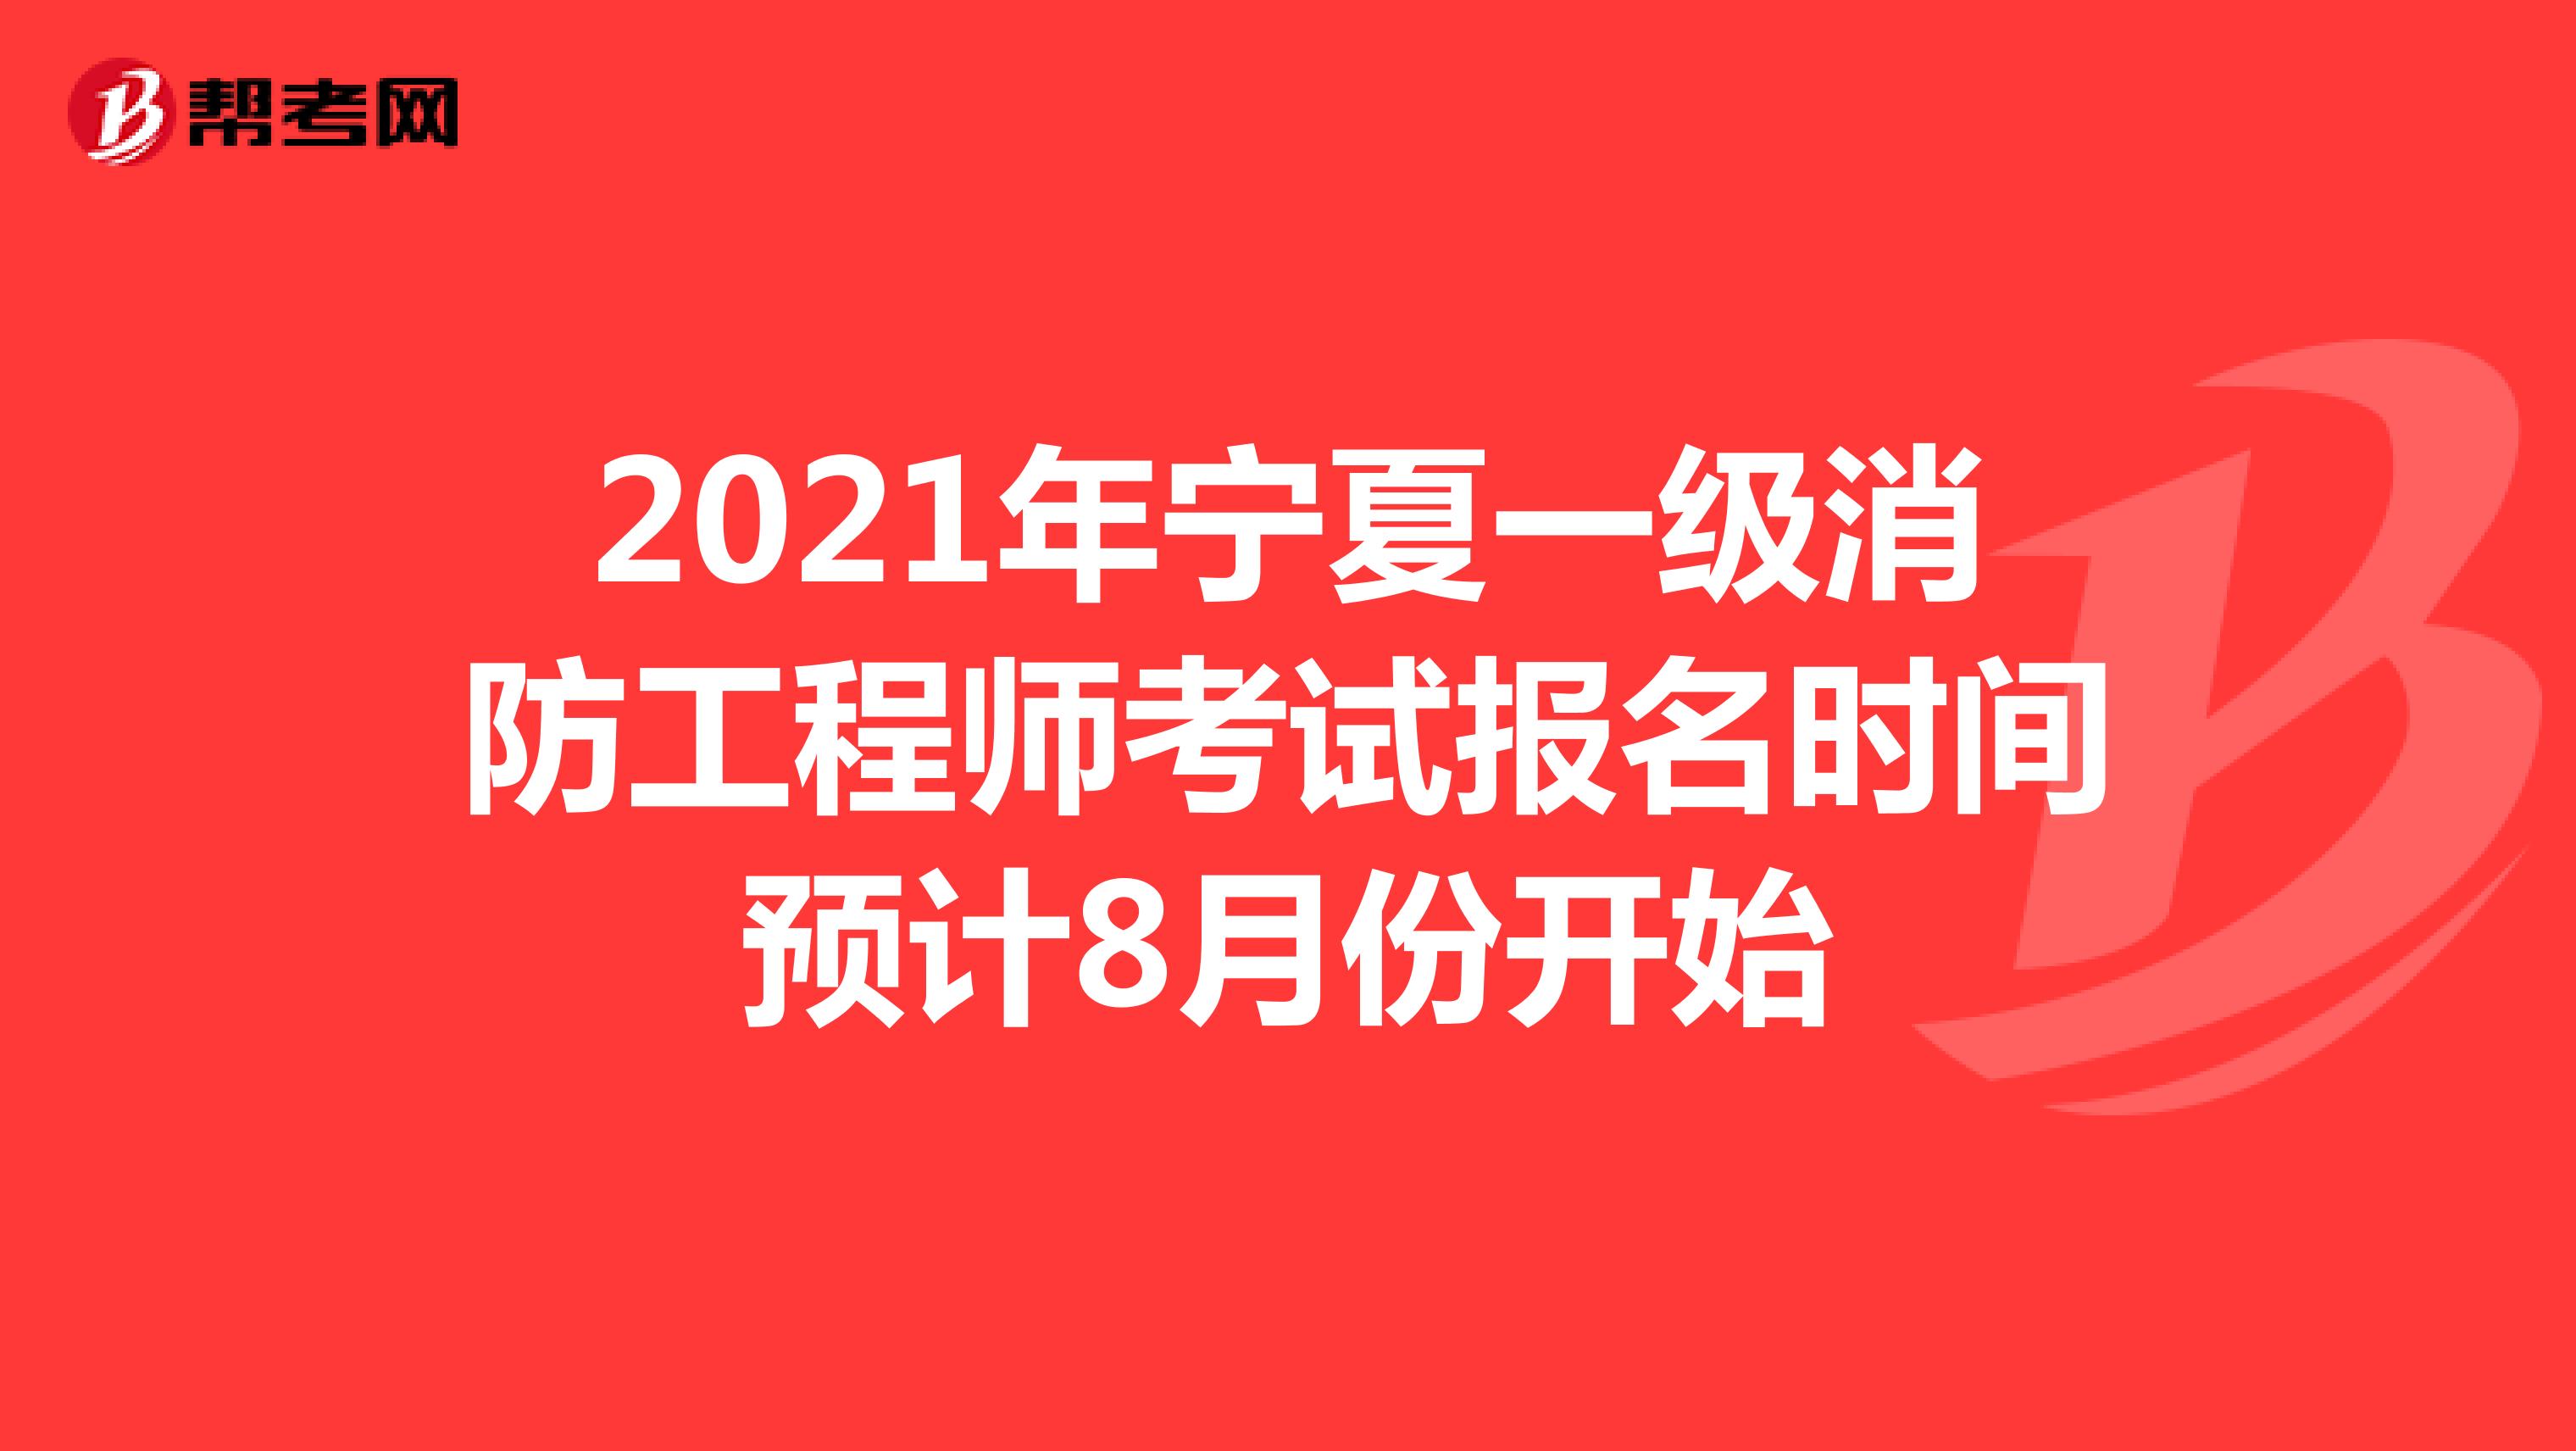 2021年宁夏一级消防工程师考试报名时间预计8月份开始